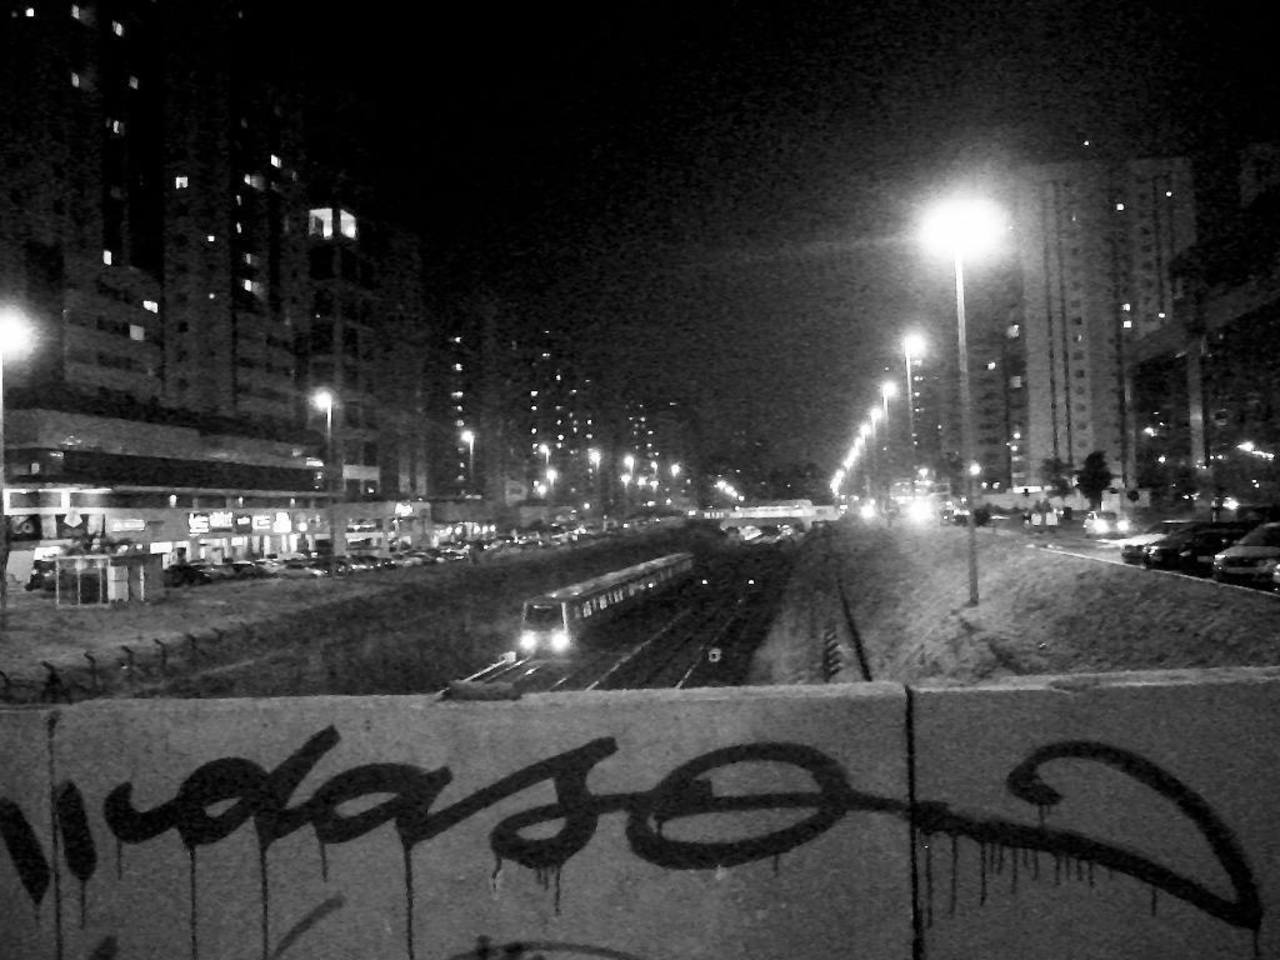 Fresh 
#daso #das #graffiti #graffitibrasilia #streetart #bomb #bombing #brasil #brasilia #df #tag #fresh #caligraf… https://t.co/dhZHuglP98